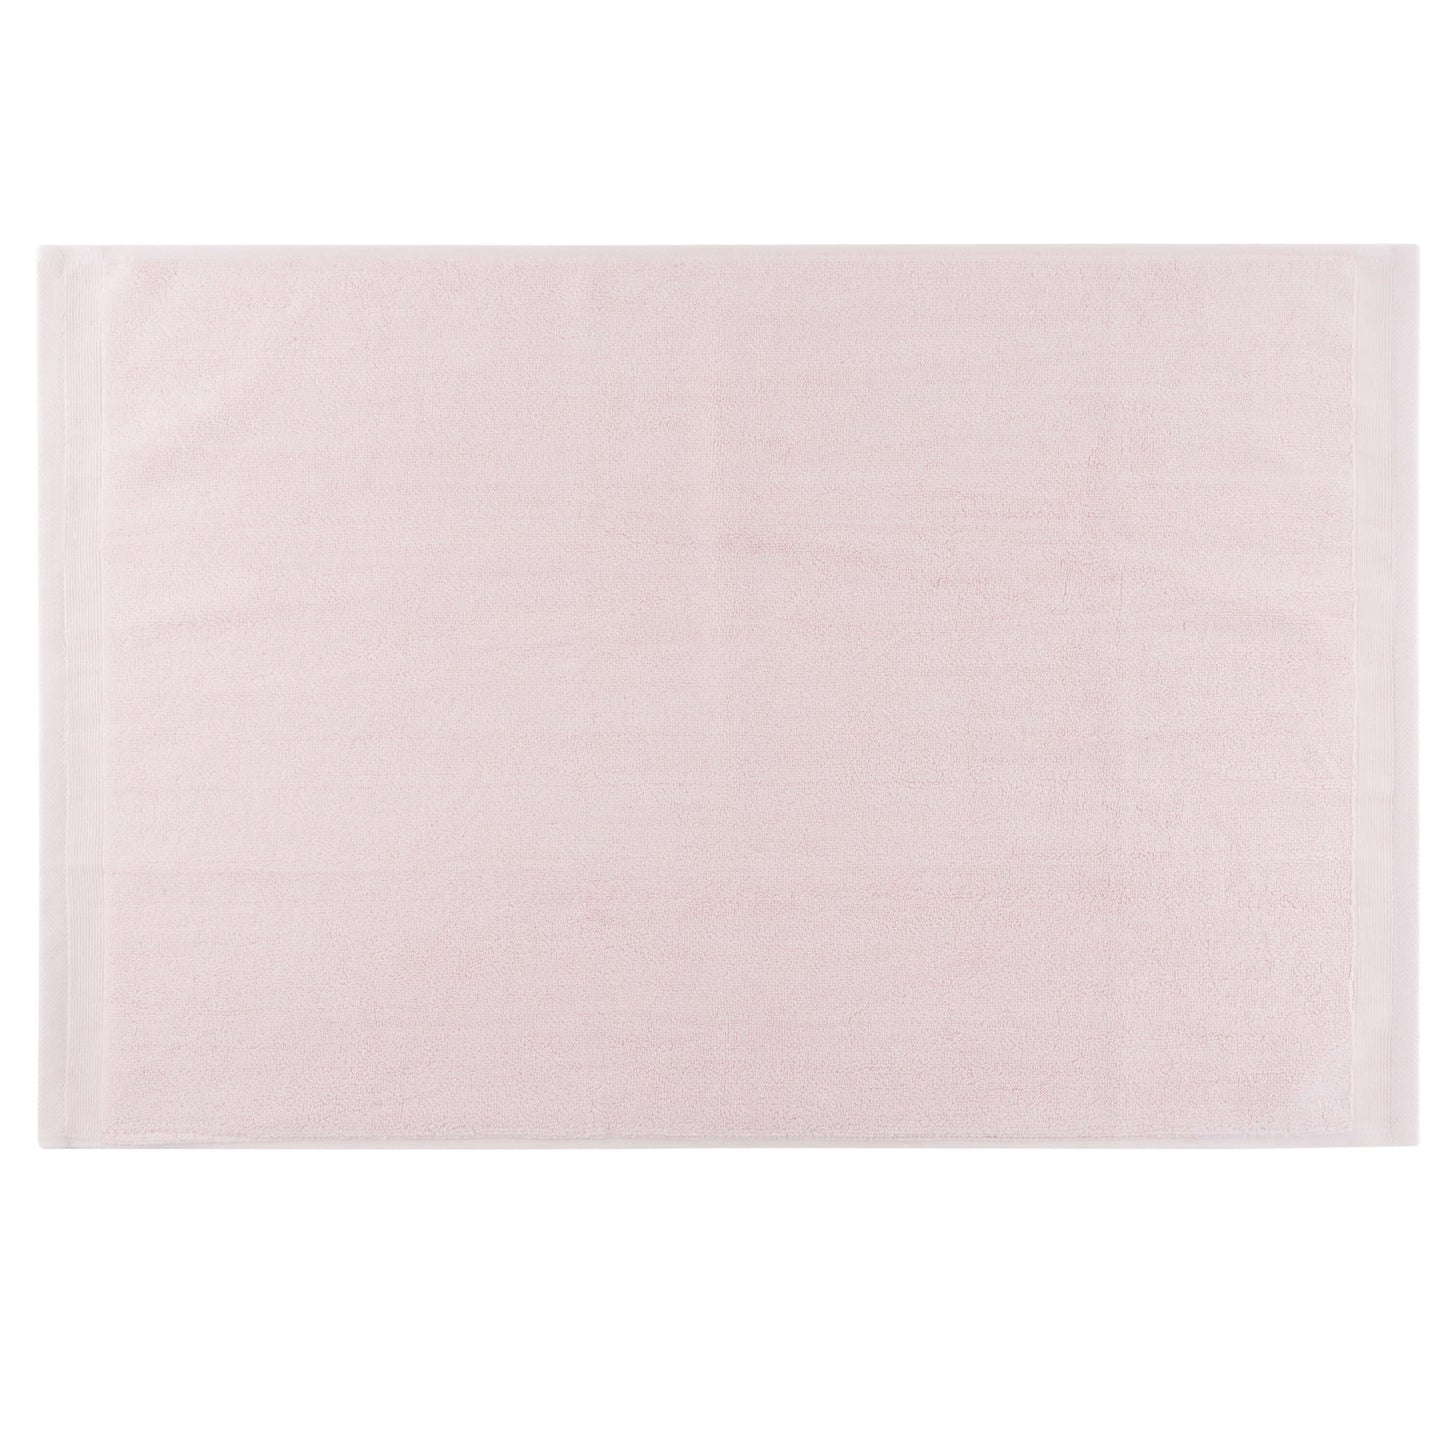 Serenity Palace Cotton Bath Mat - Blush Pink - 1000GSM Zero Twist